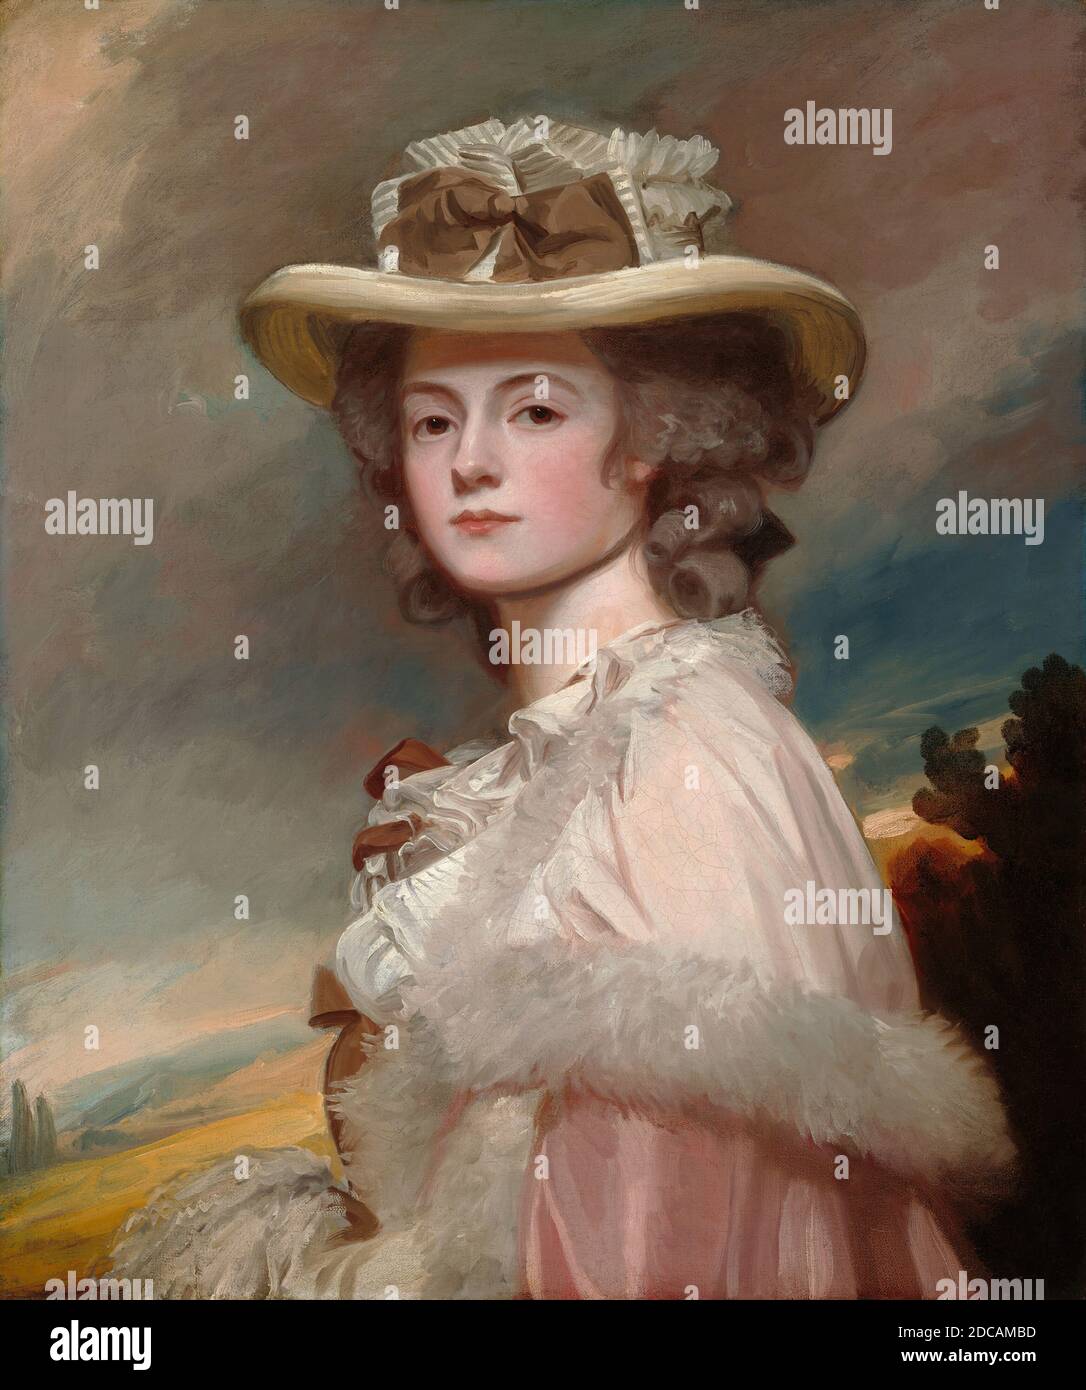 George Romney, (artiste), British, 1734 - 1802, Mme Davies Davenport, 1782-1784, huile sur toile, total: 76.5 x 64 cm (30 1/8 x 25 3/16 po.), encadré: 104.1 x 91.4 x 12.7 cm (41 x 36 x 5 po Banque D'Images